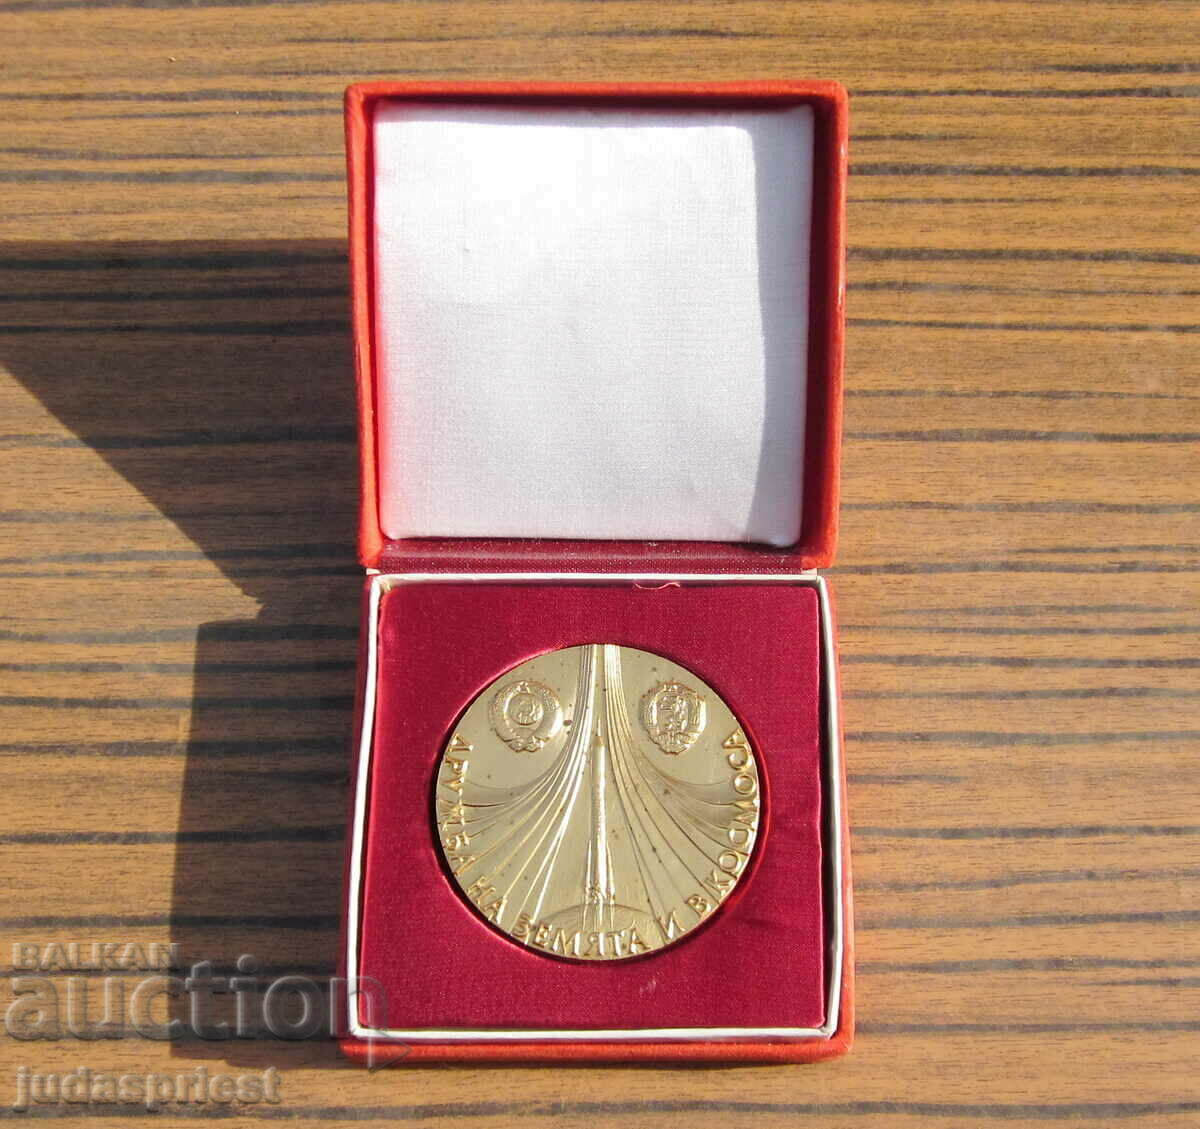 Βουλγαρικό διαστημικό μετάλλιο, διαστημική πτήση Shipka 1988